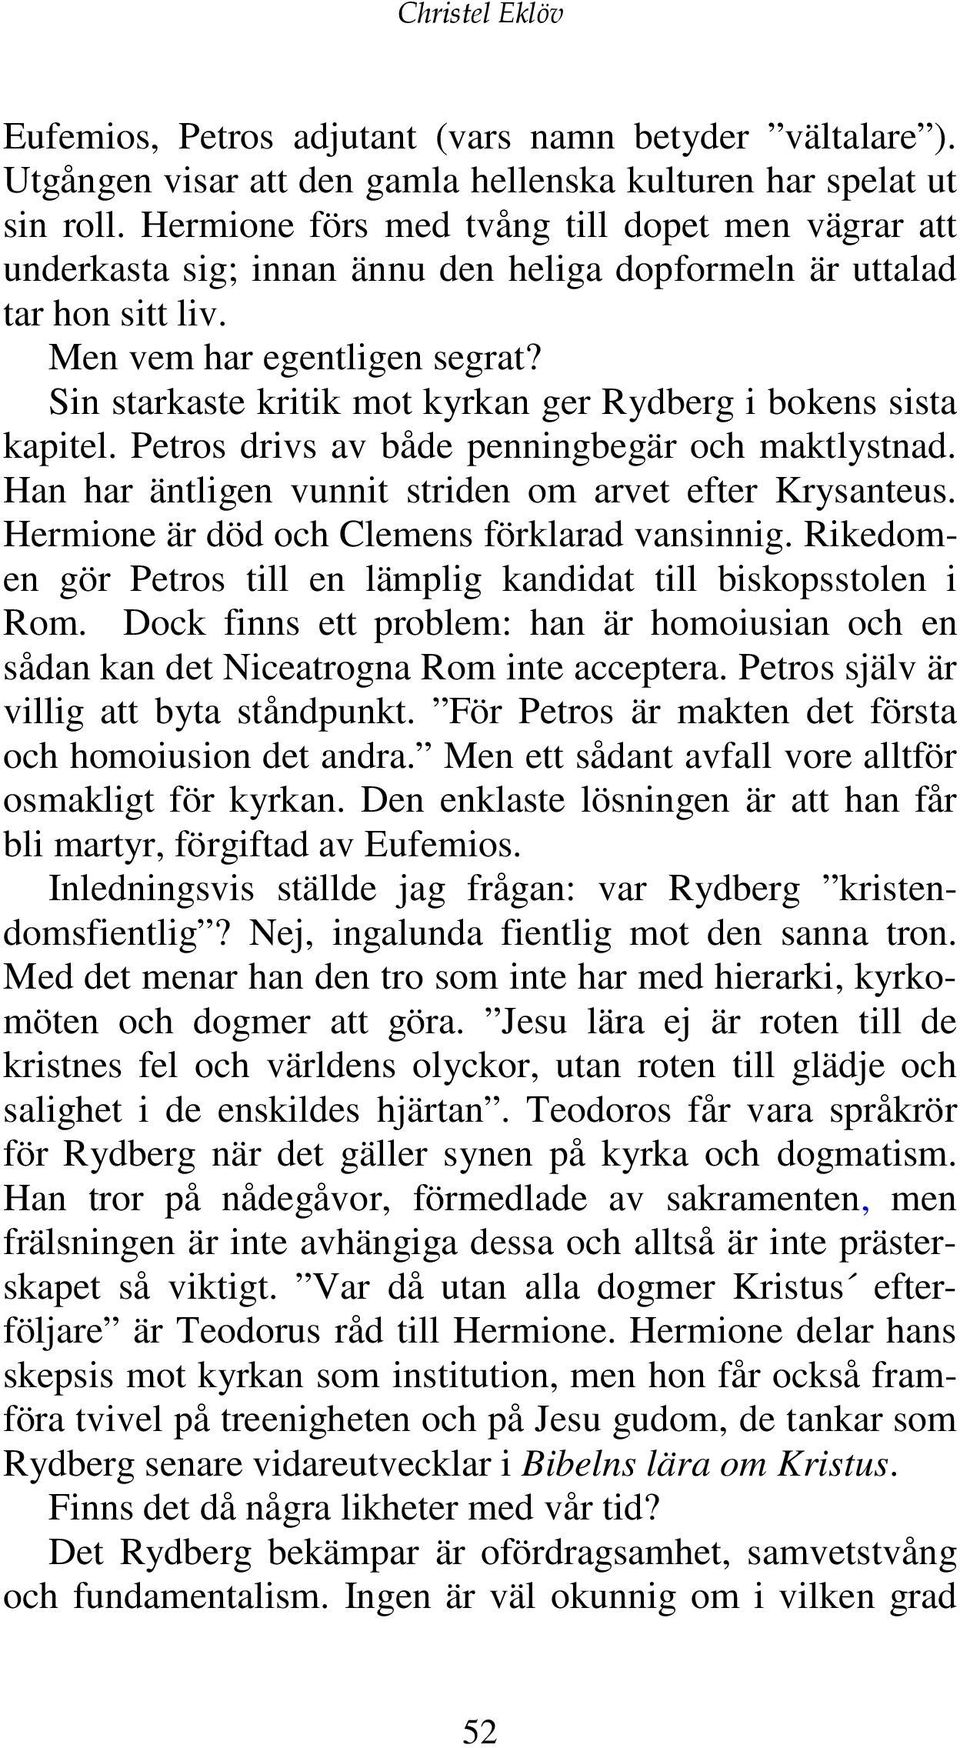 Sin starkaste kritik mot kyrkan ger Rydberg i bokens sista kapitel. Petros drivs av både penningbegär och maktlystnad. Han har äntligen vunnit striden om arvet efter Krysanteus.